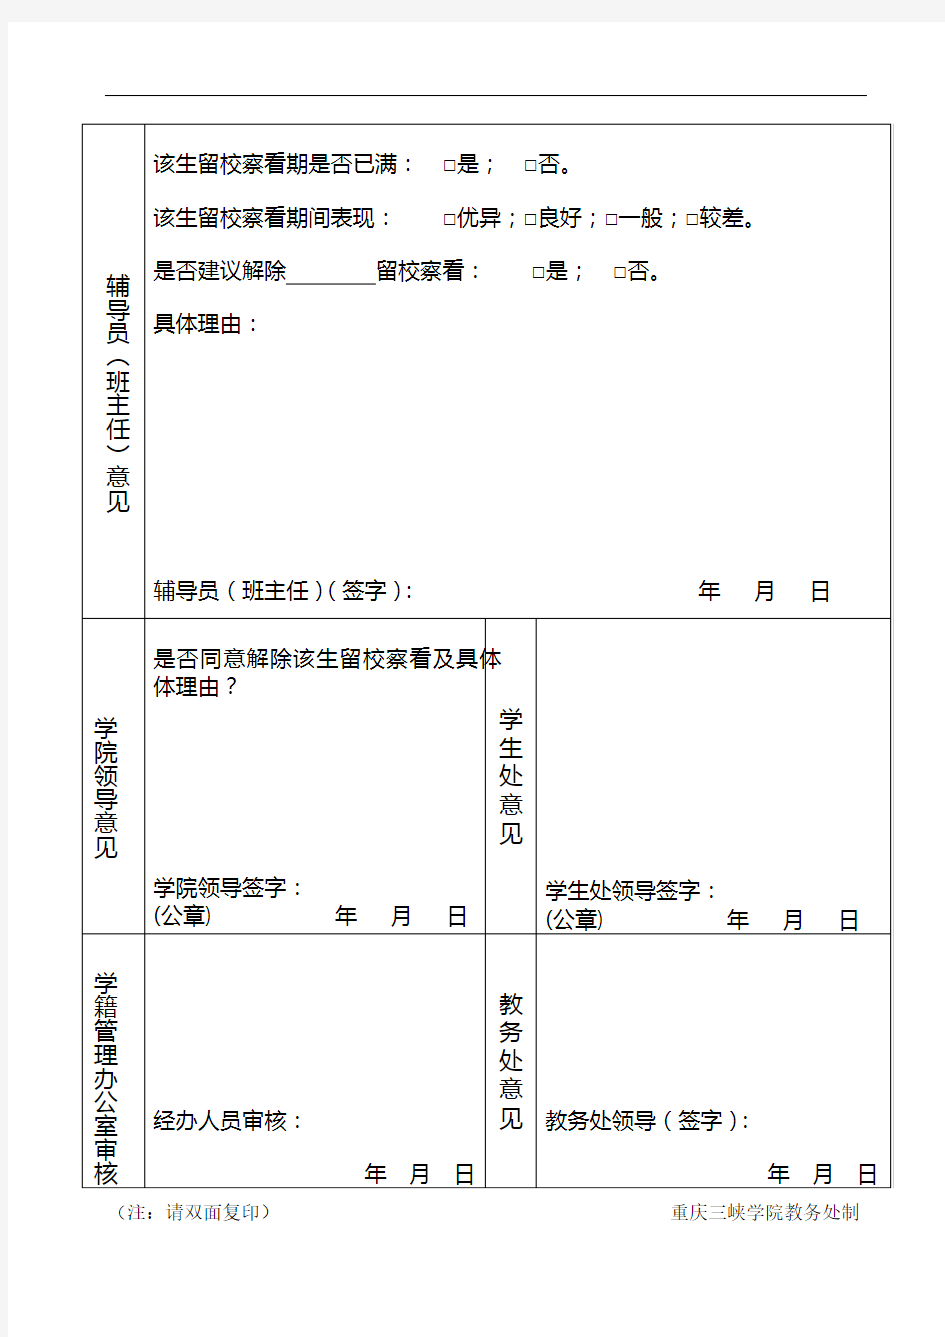 重庆三峡学院学生解除留校察看申请表